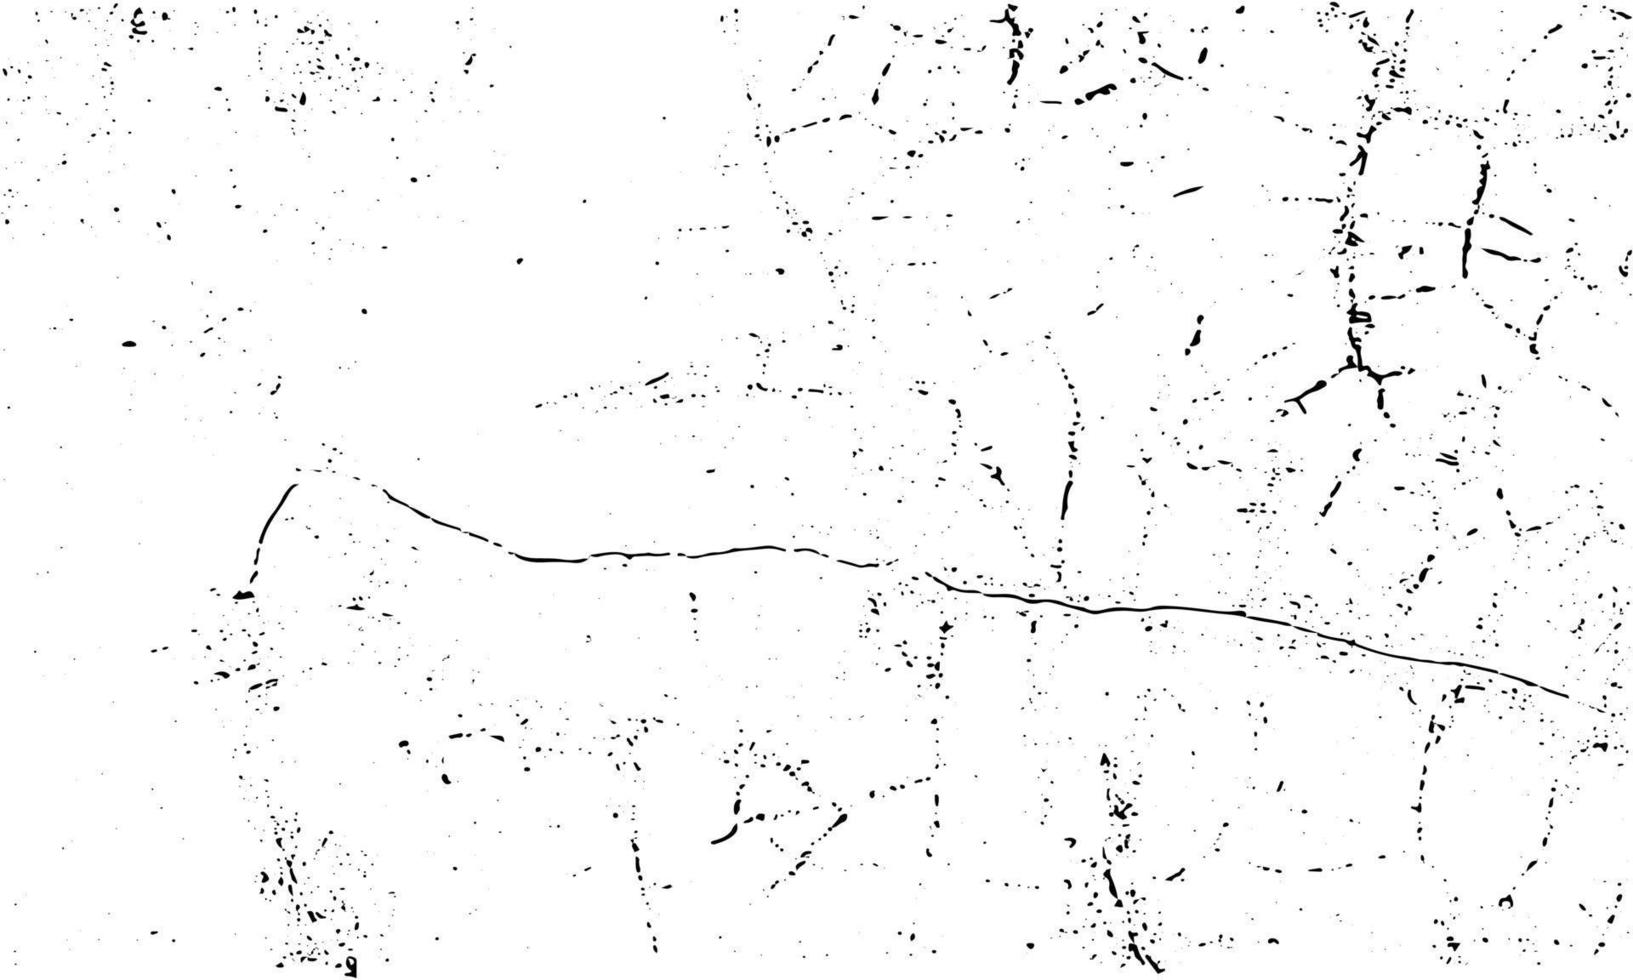 el sello granulado sucio y los arañazos superponen el fondo blanco. partícula de polvo envejecida grunge blanco y negro. ilustración vectorial vector